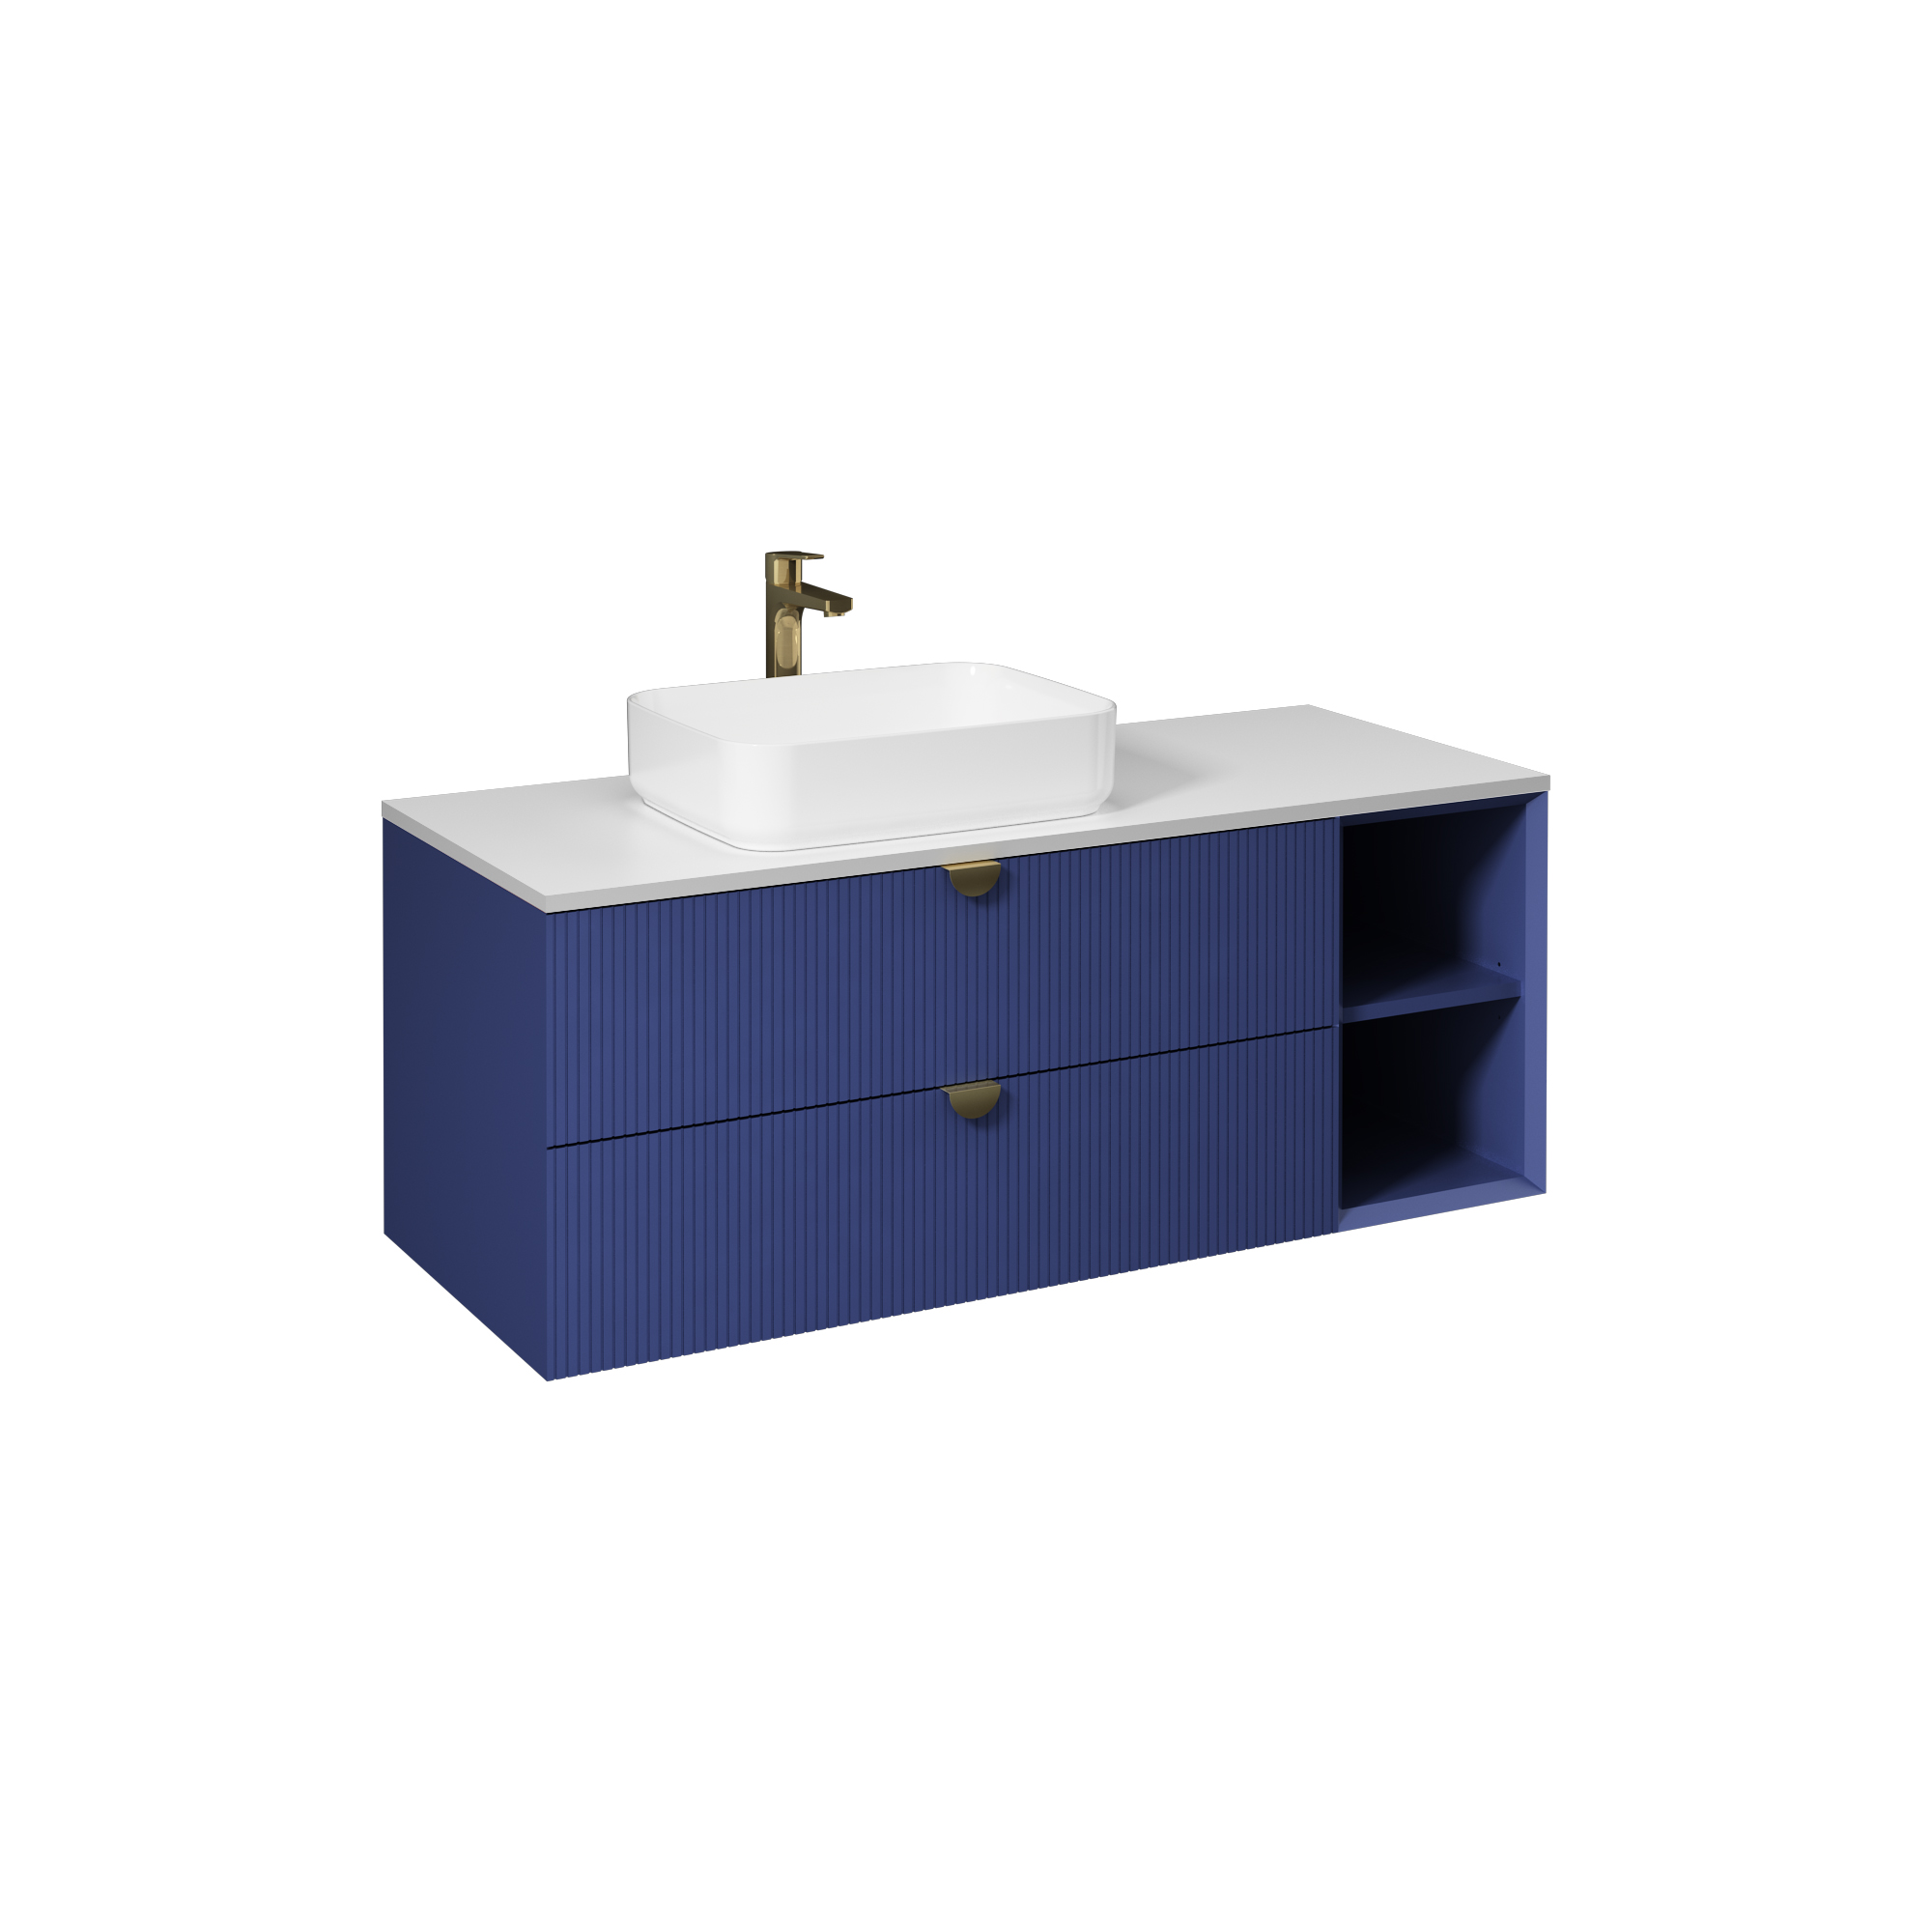 Infinity Washbasin Cabinet, Night Blue, with White Washbasin 51"